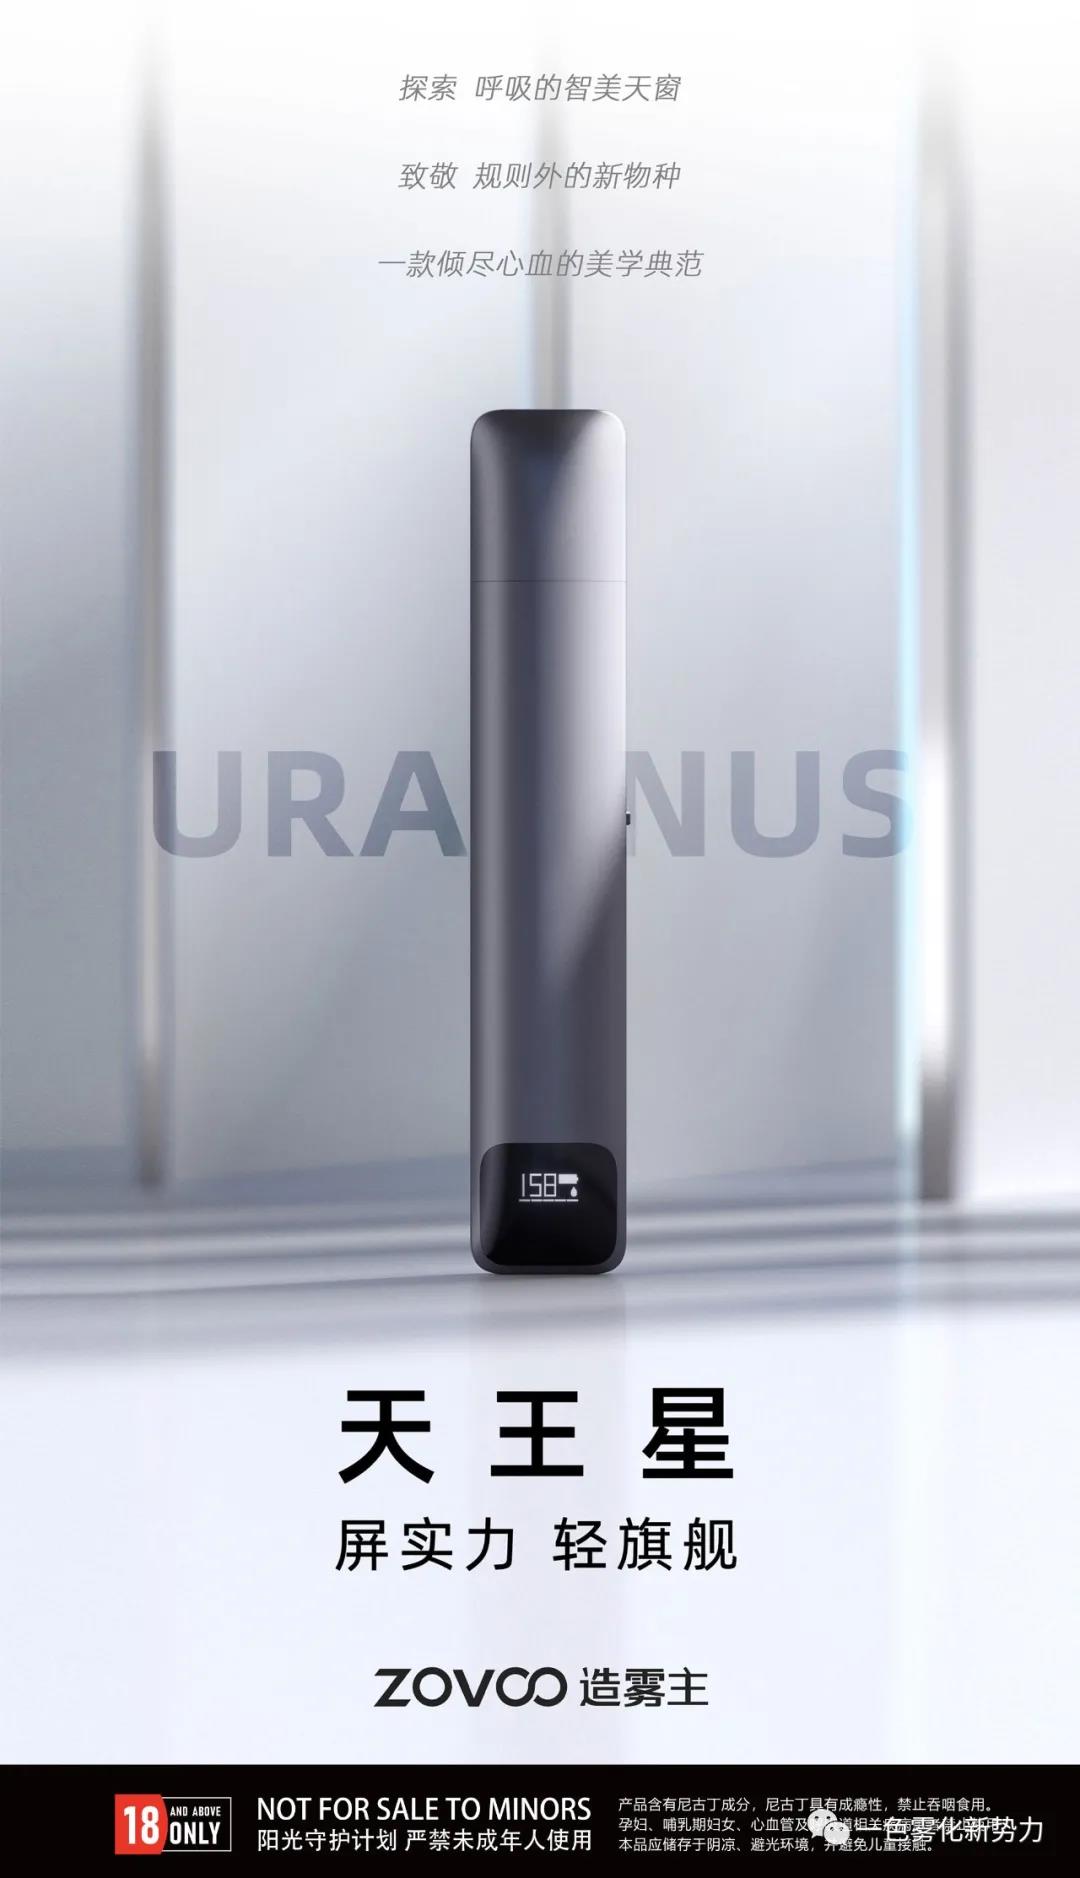 ZOVOO造雾主新产品天王星发布，被誉为电子烟中的苹果